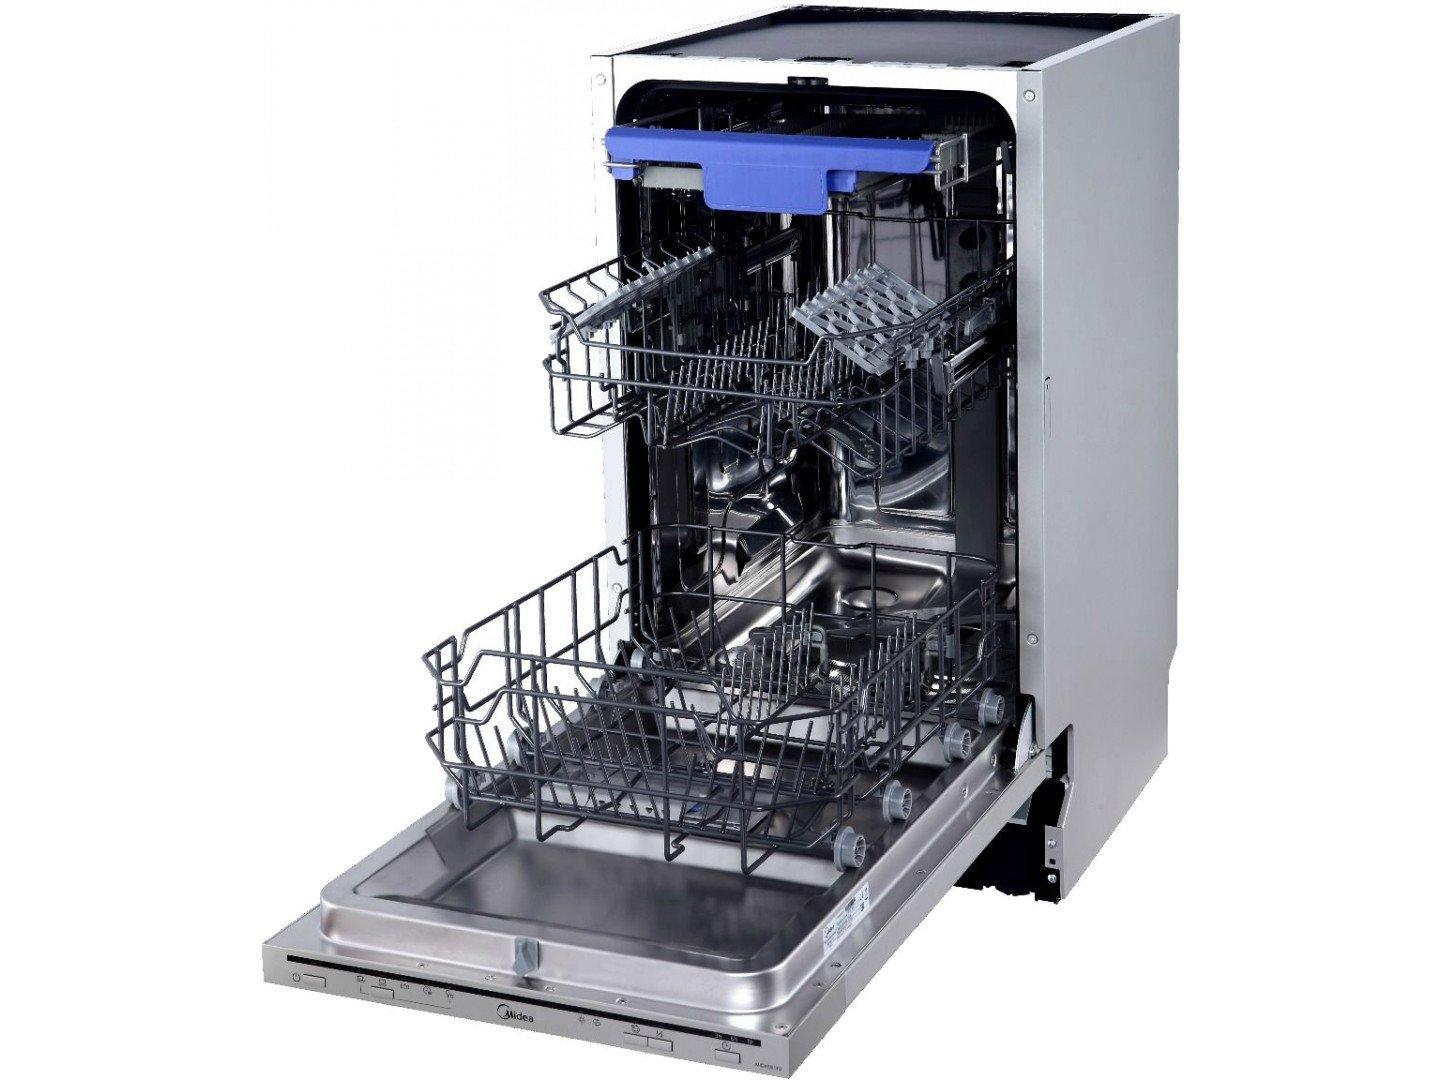 ТОП-45 самых узких посудомоечных машин 2024